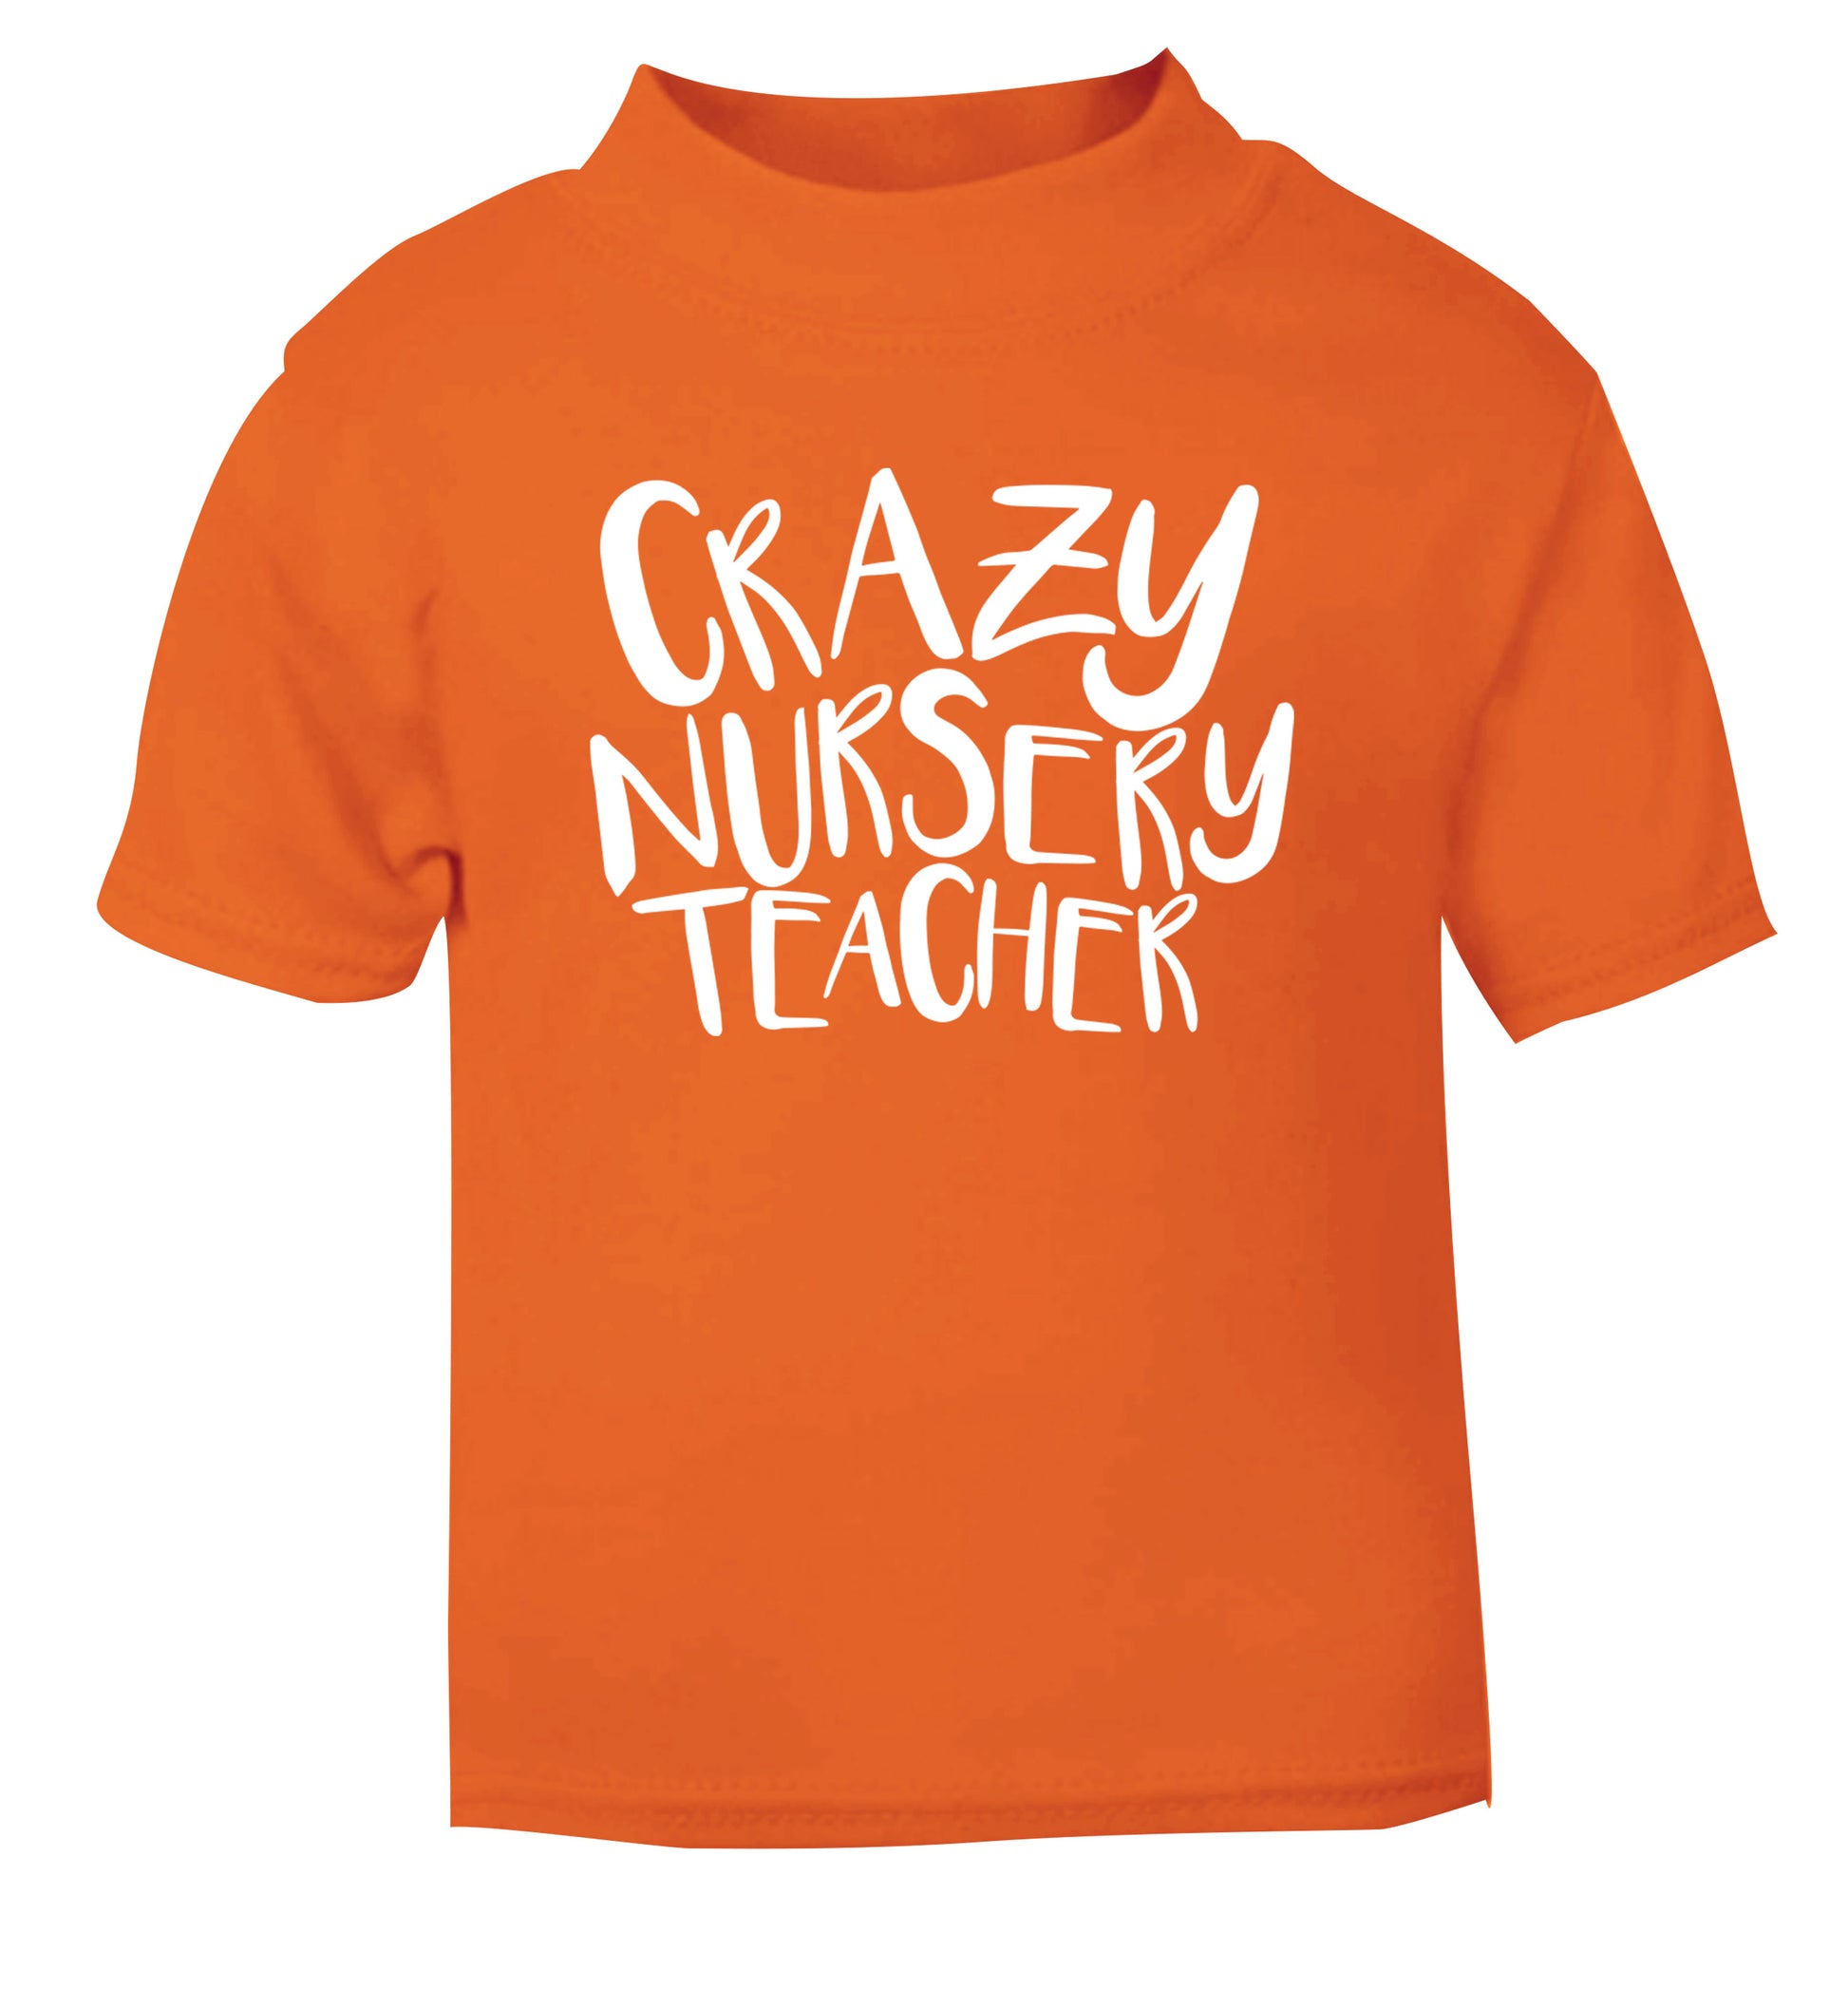 Crazy nursery teacher orange Baby Toddler Tshirt 2 Years